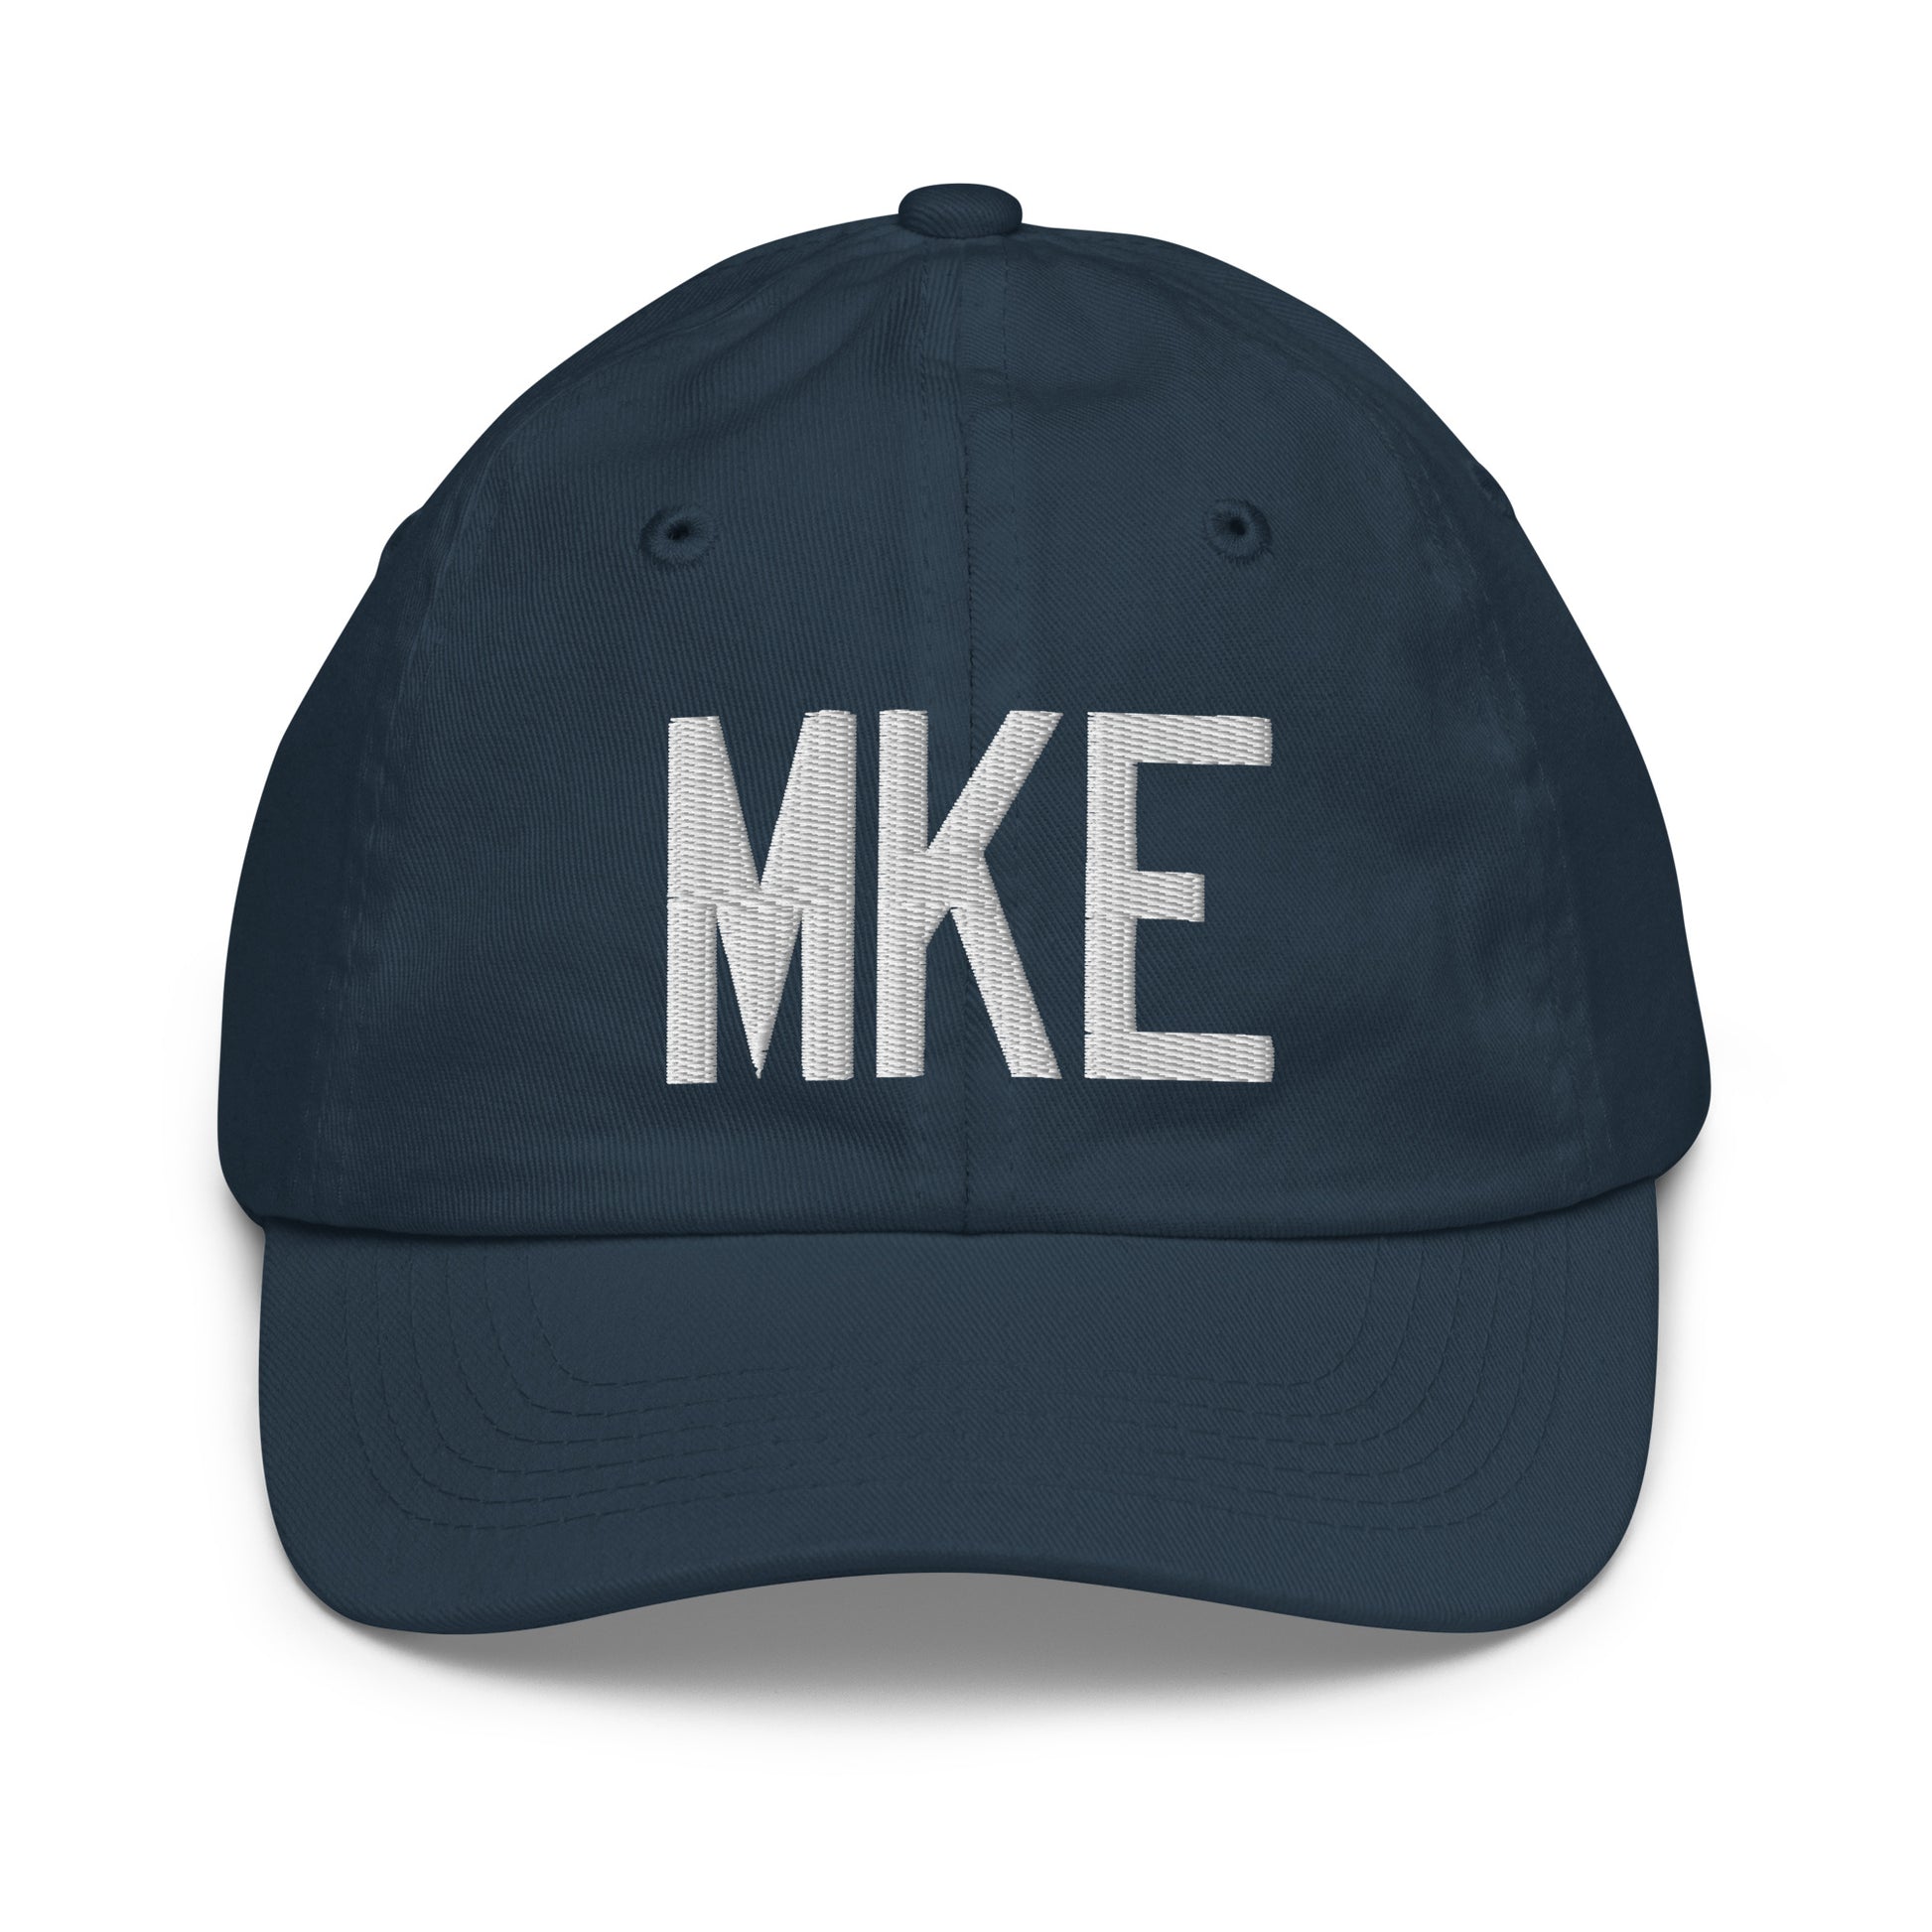 Airport Code Kid's Baseball Cap - White • MKE Milwaukee • YHM Designs - Image 14